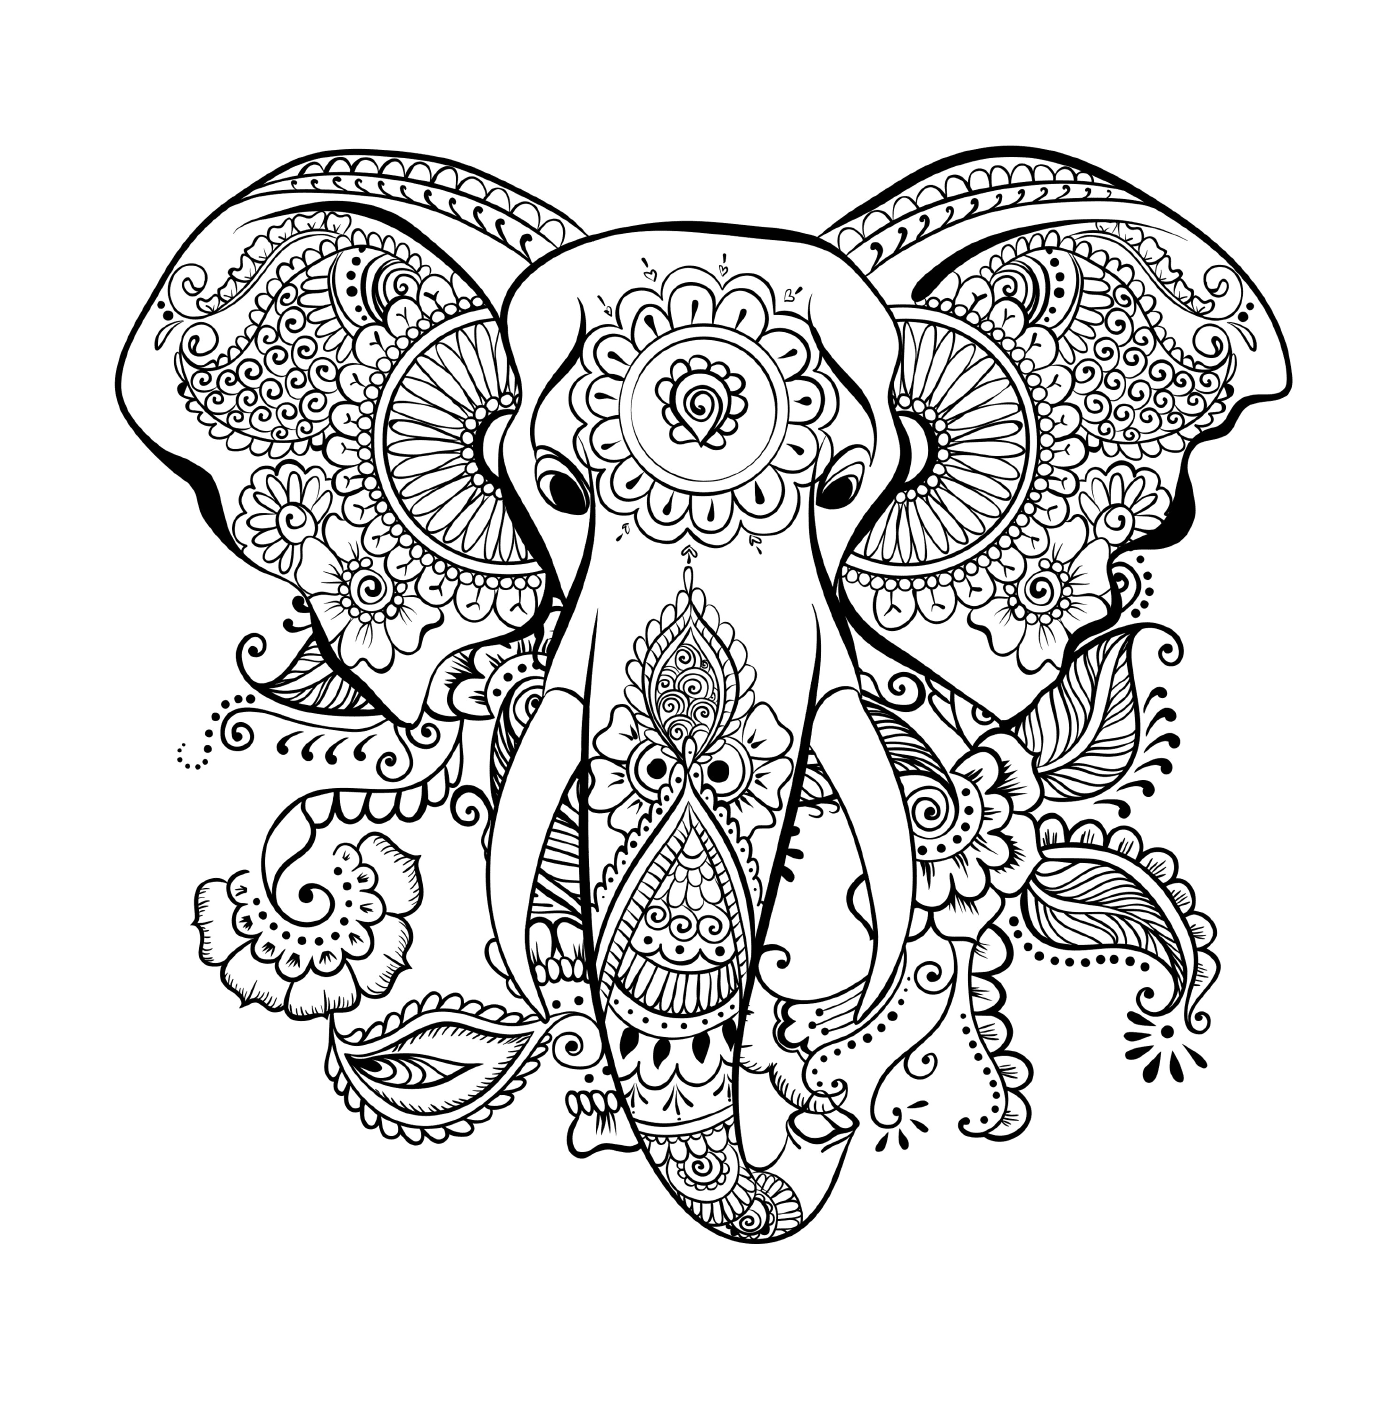  Um elefante com um padrão floral na cabeça 